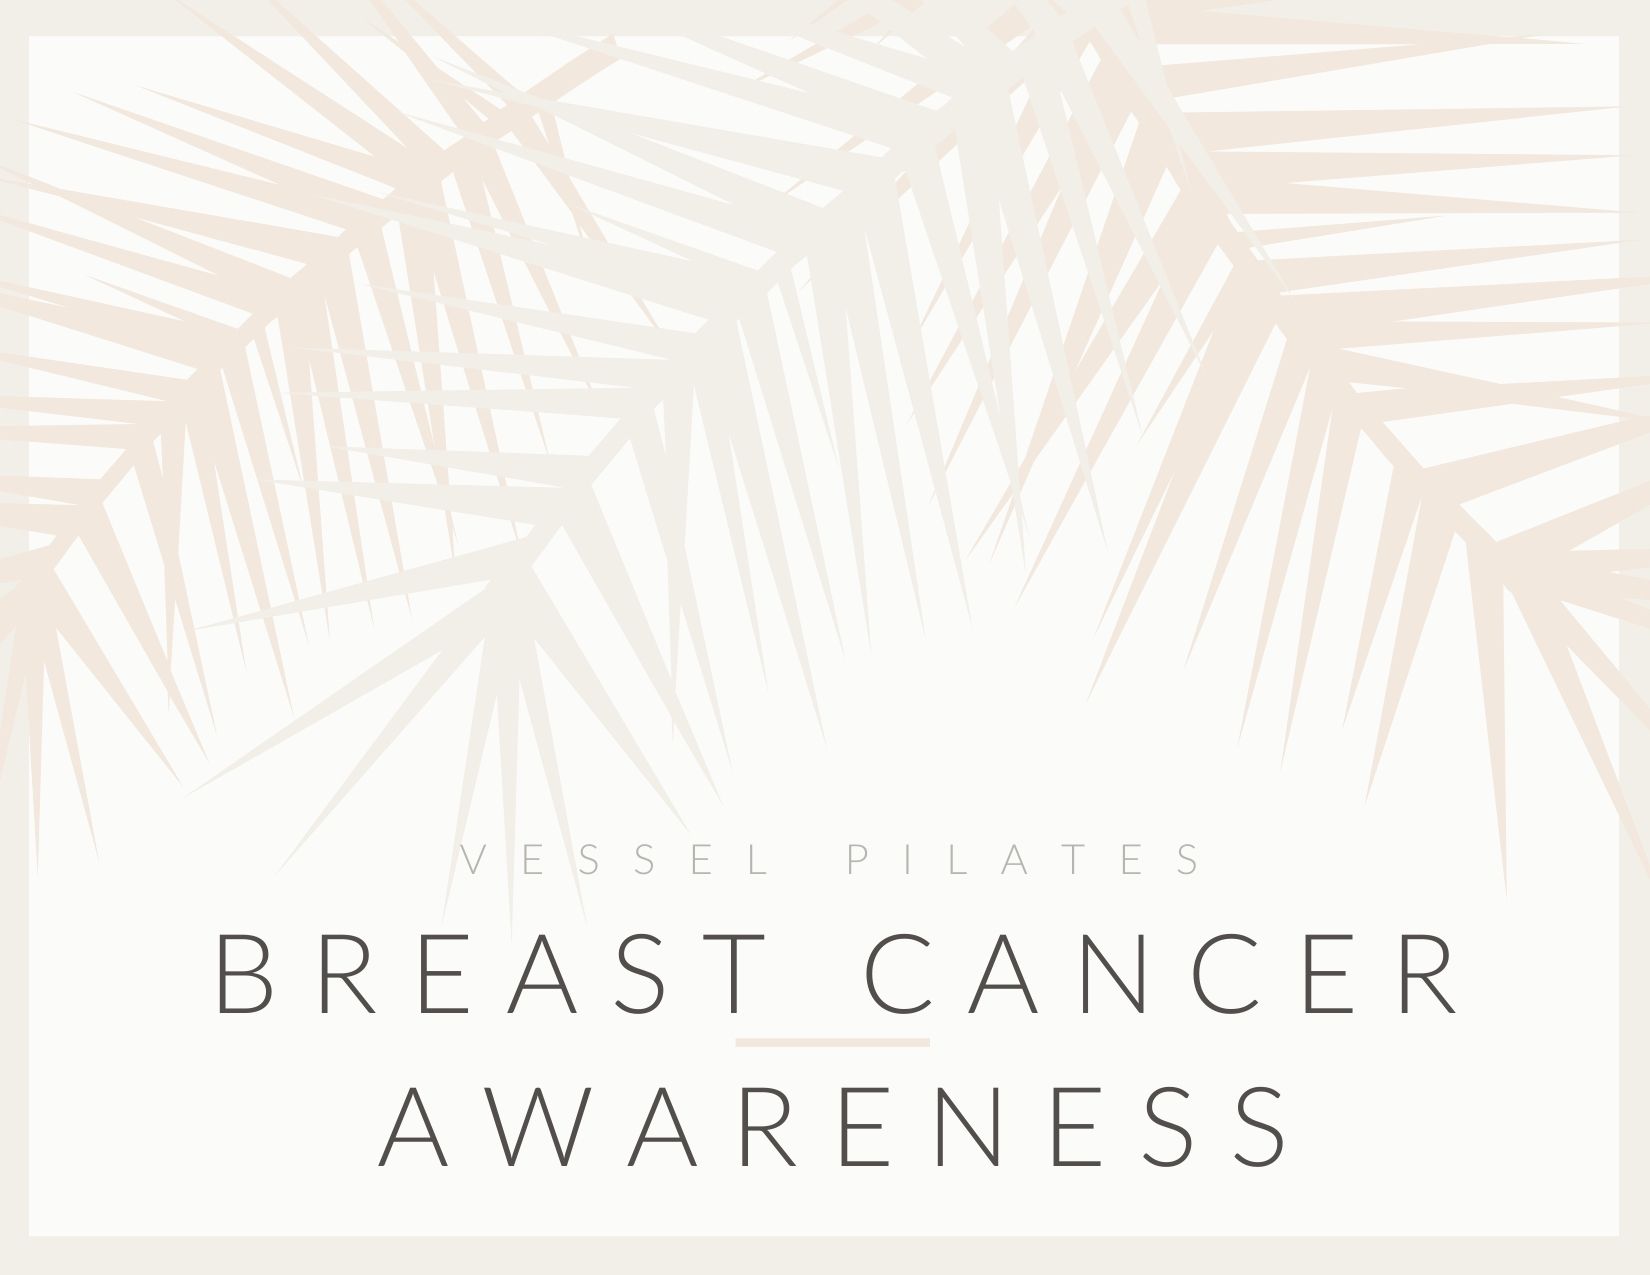 Breast Cancer Awareness - vesselpilates.com